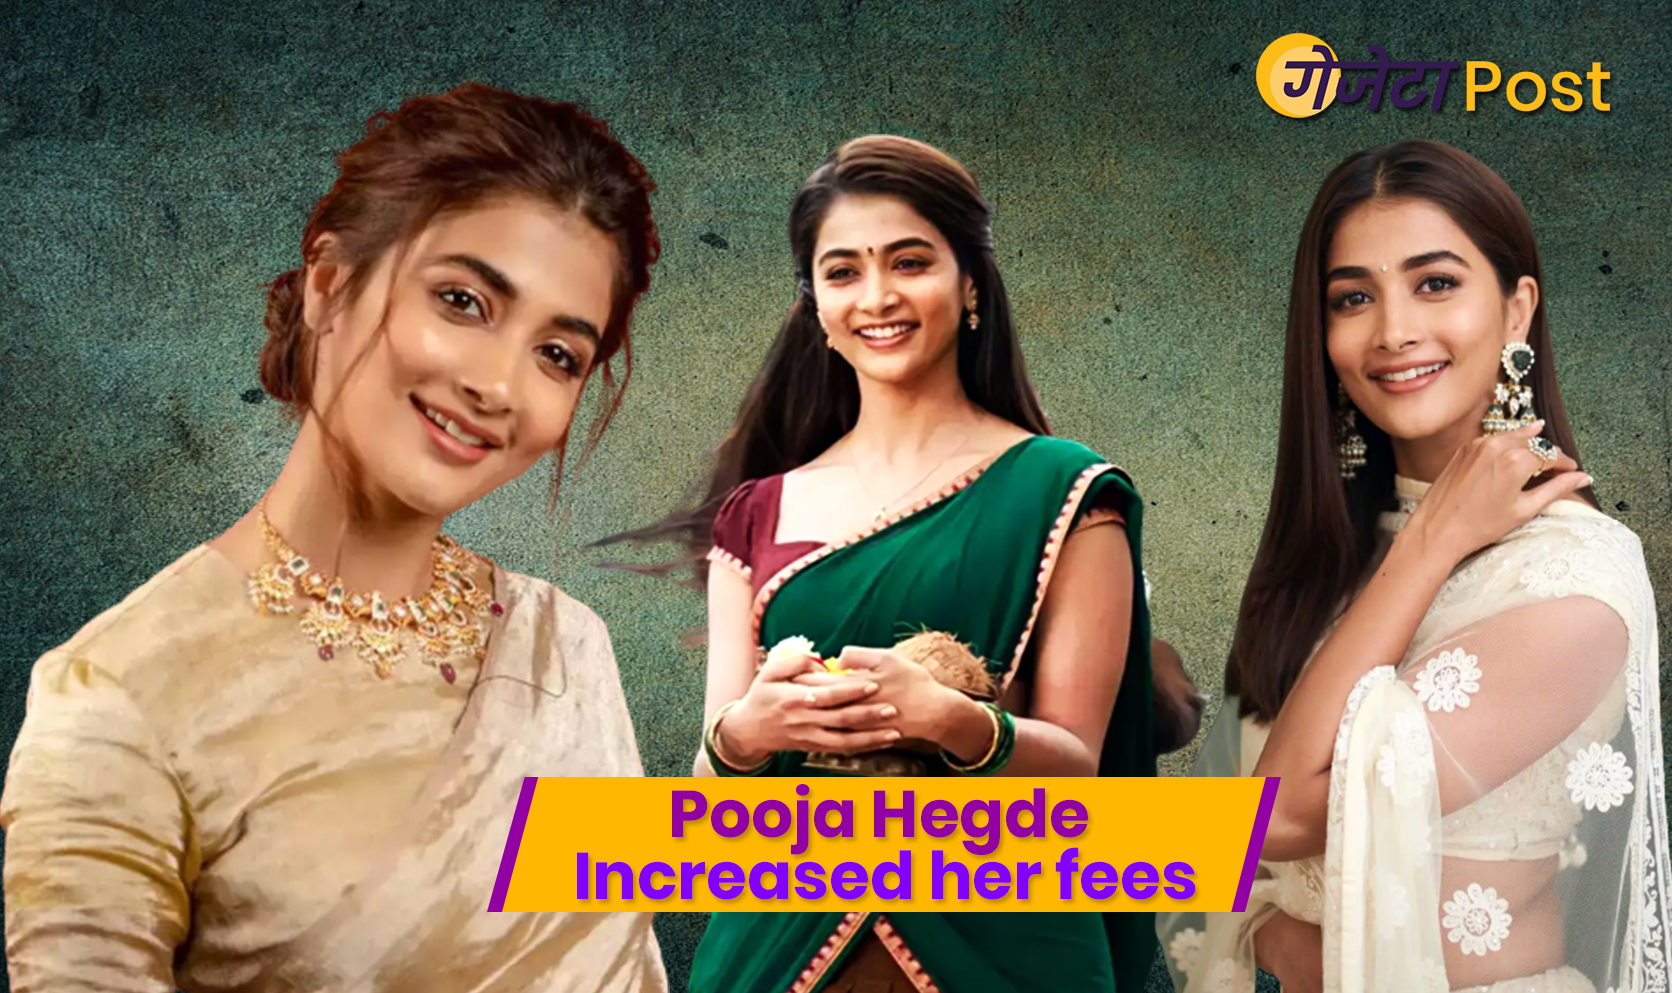 Pooja Hegde increased her fees